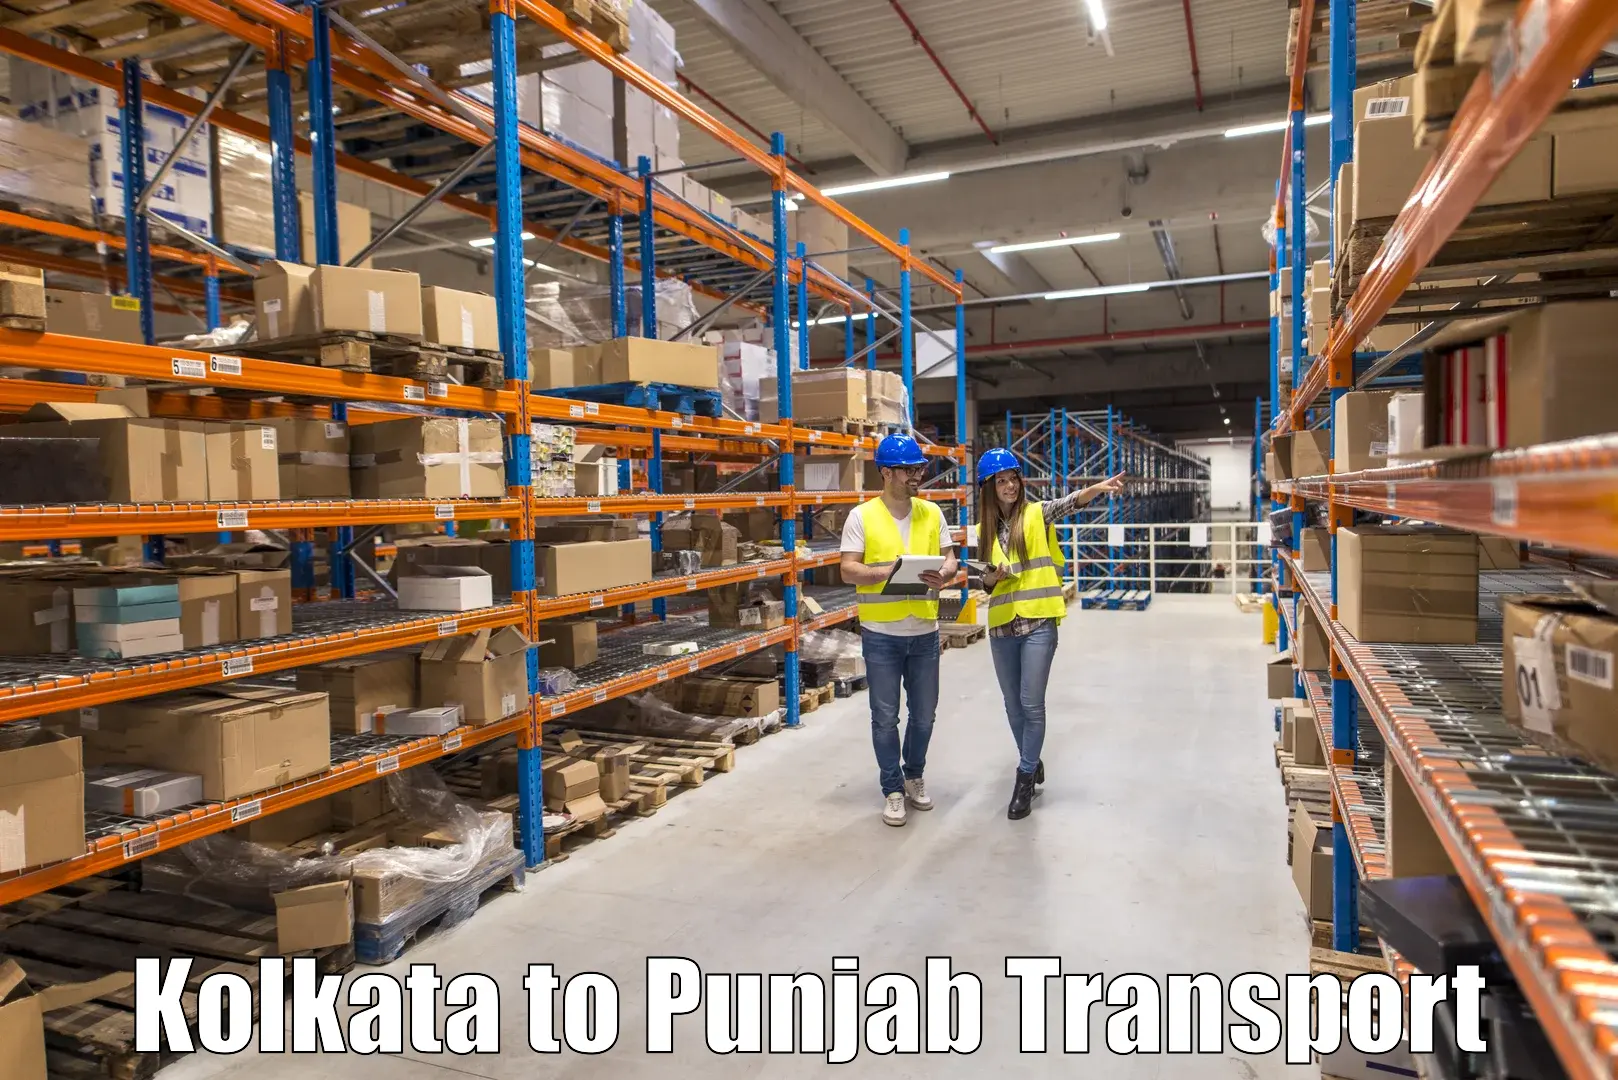 Best transport services in India Kolkata to Jalandhar